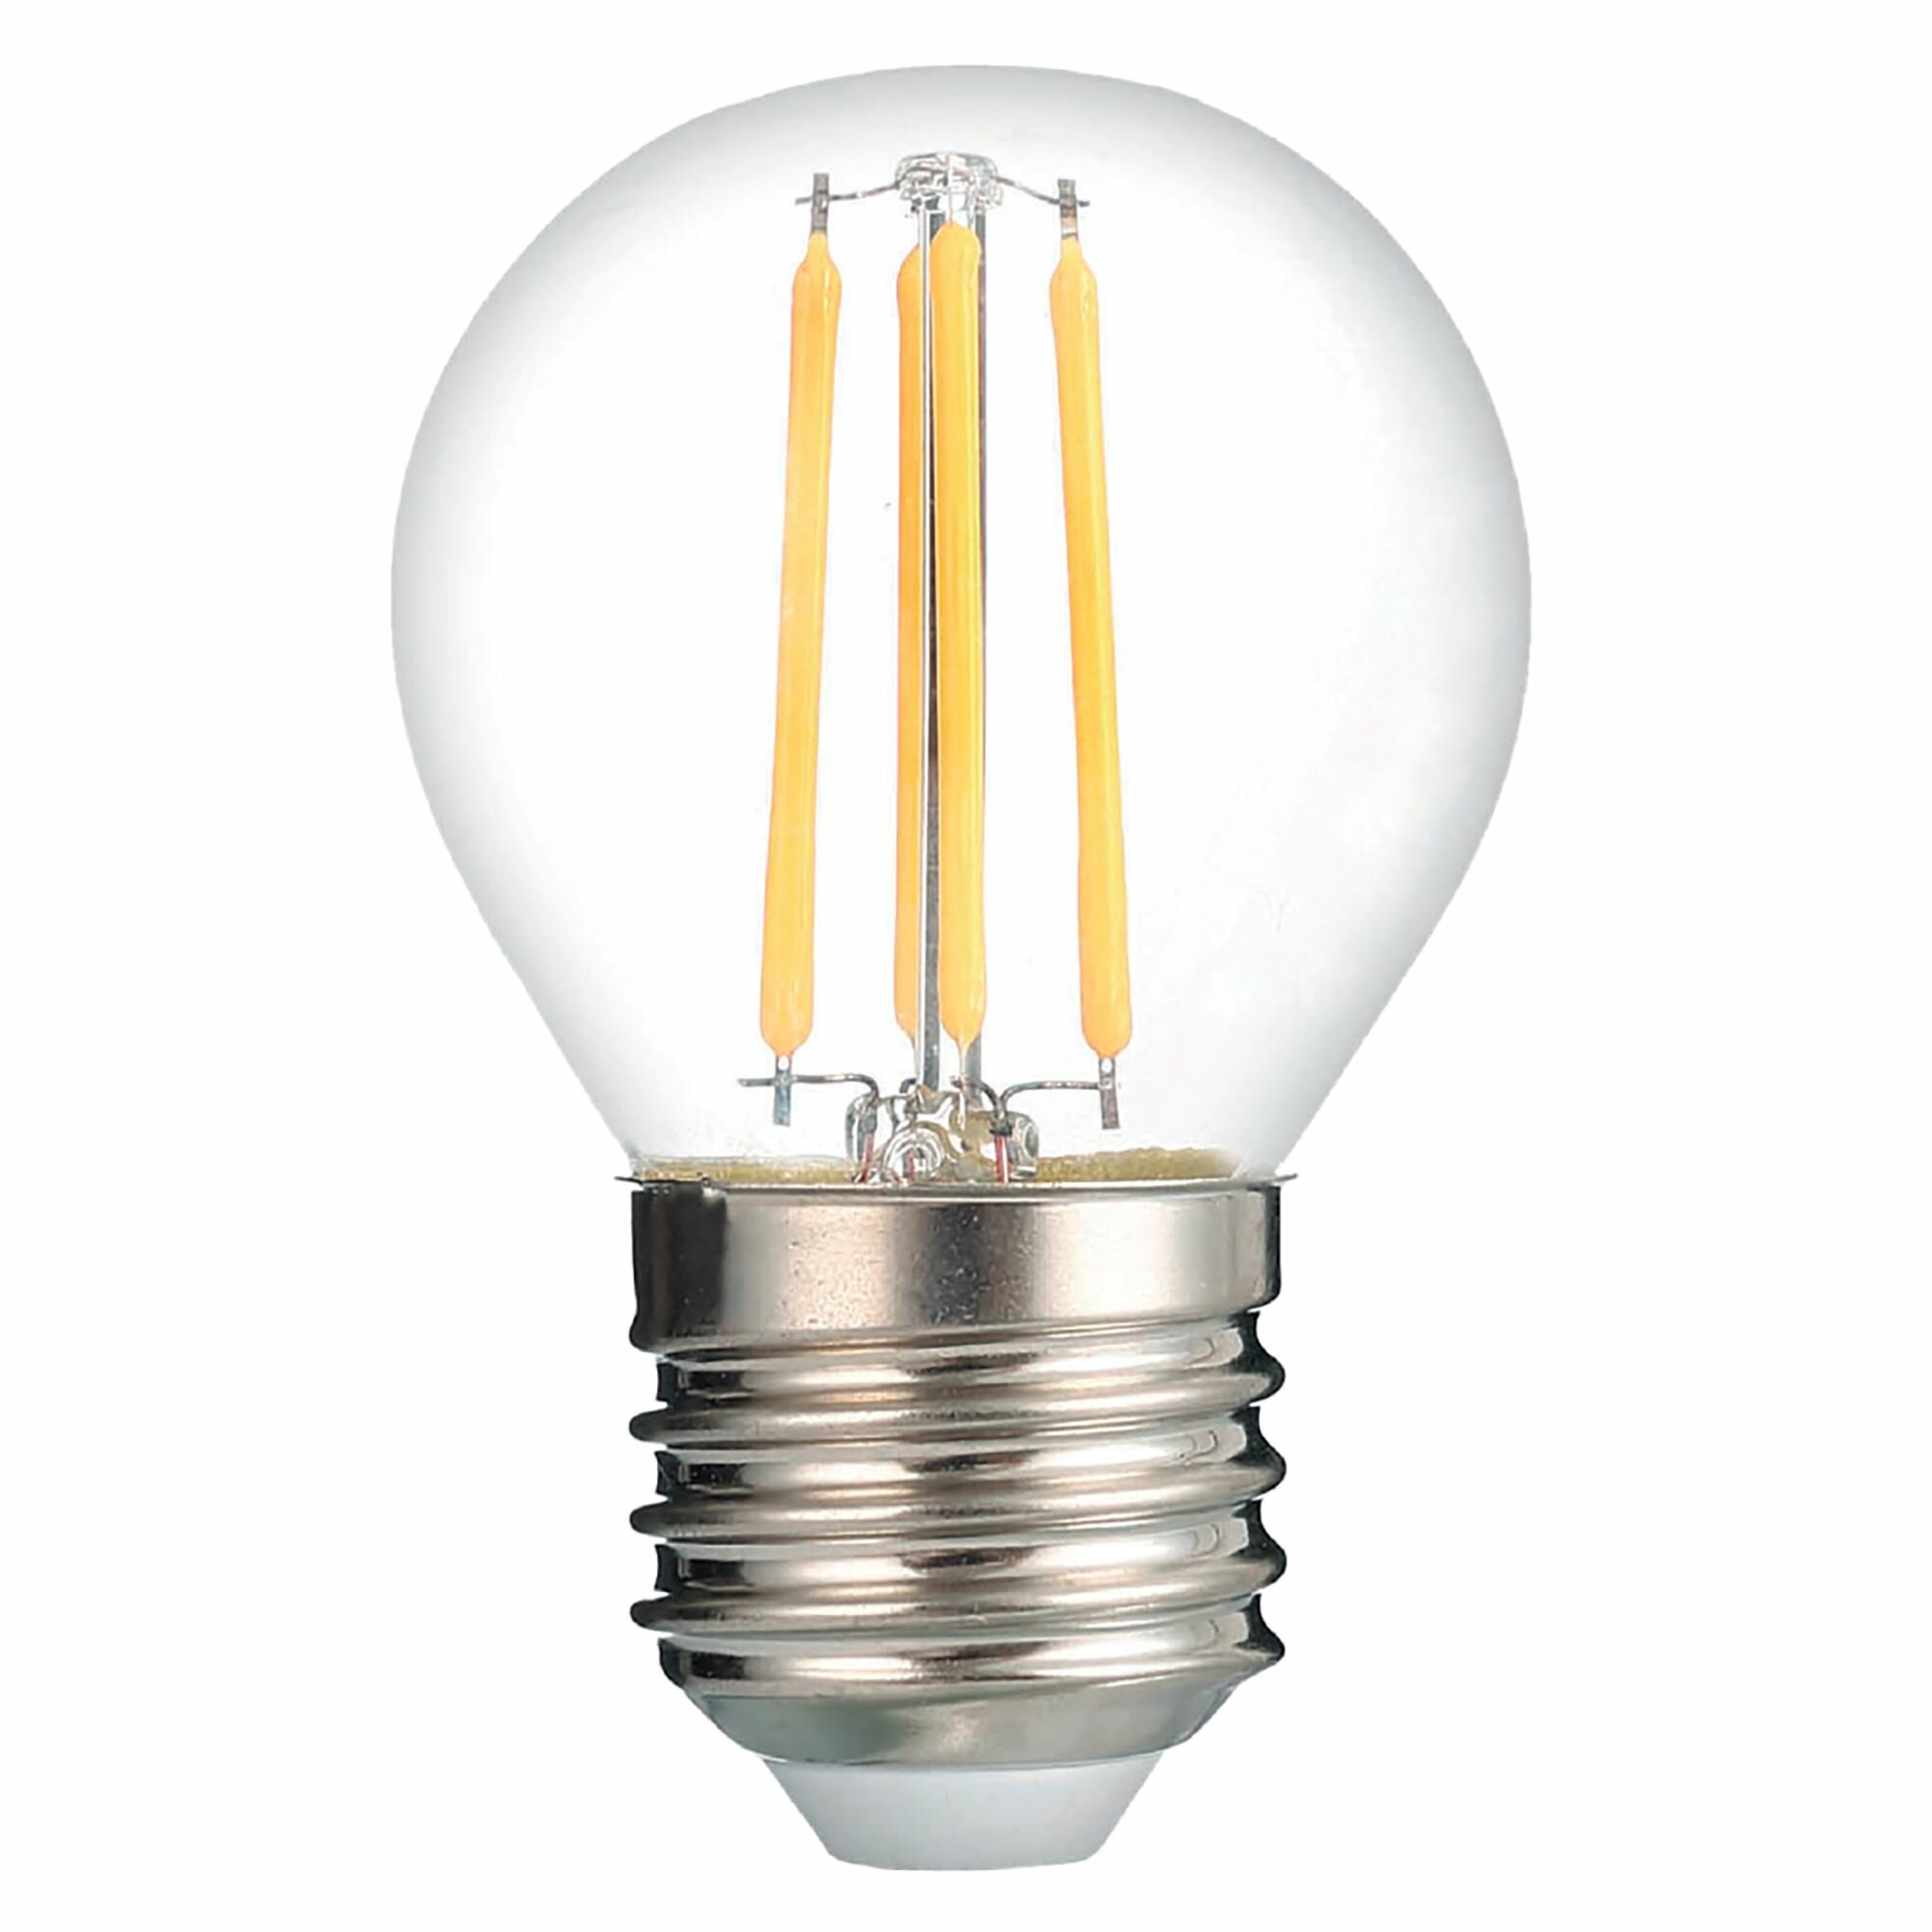 Лампочка Thomson филаментная TH-B2092 7 Вт, E27, 4500K, шар, нейтральный белый свет